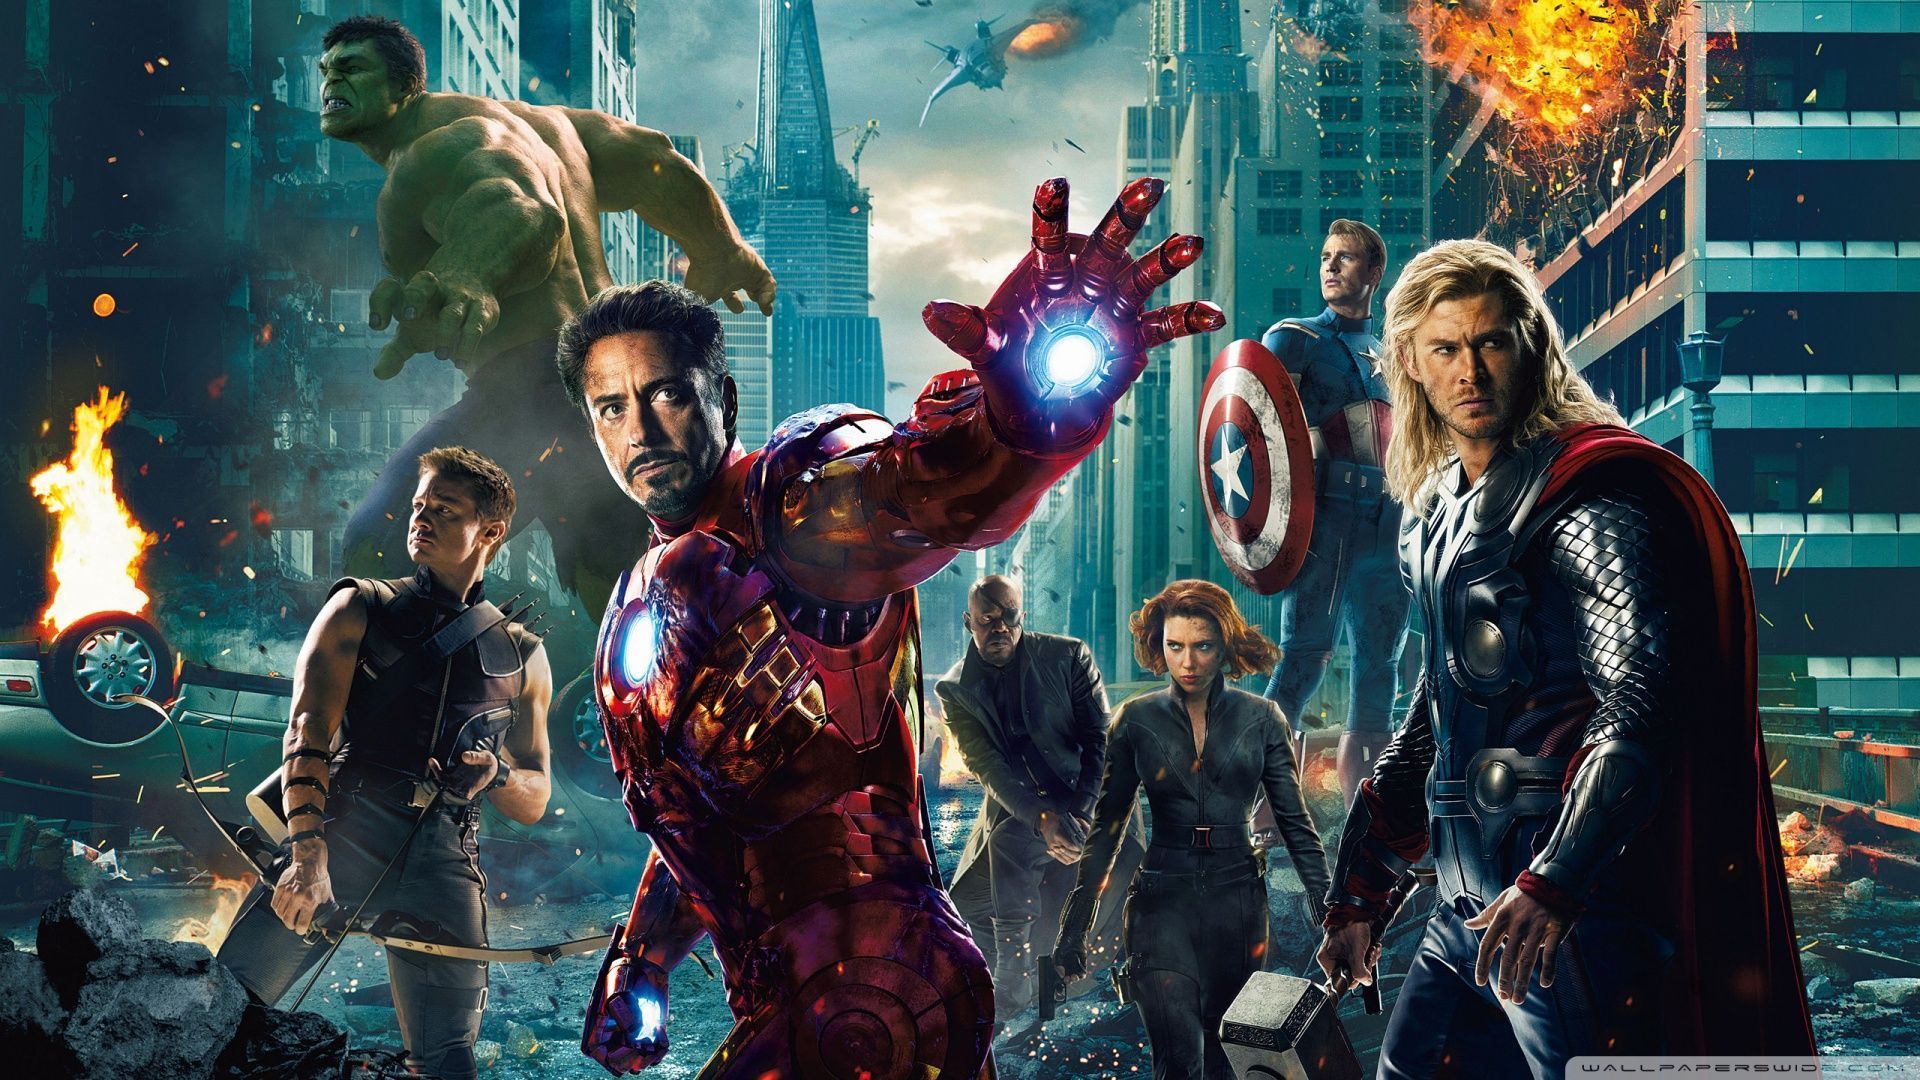 Marvel Avengers Wallpaper | The Avengers Wallpapers HD | Avengers ...